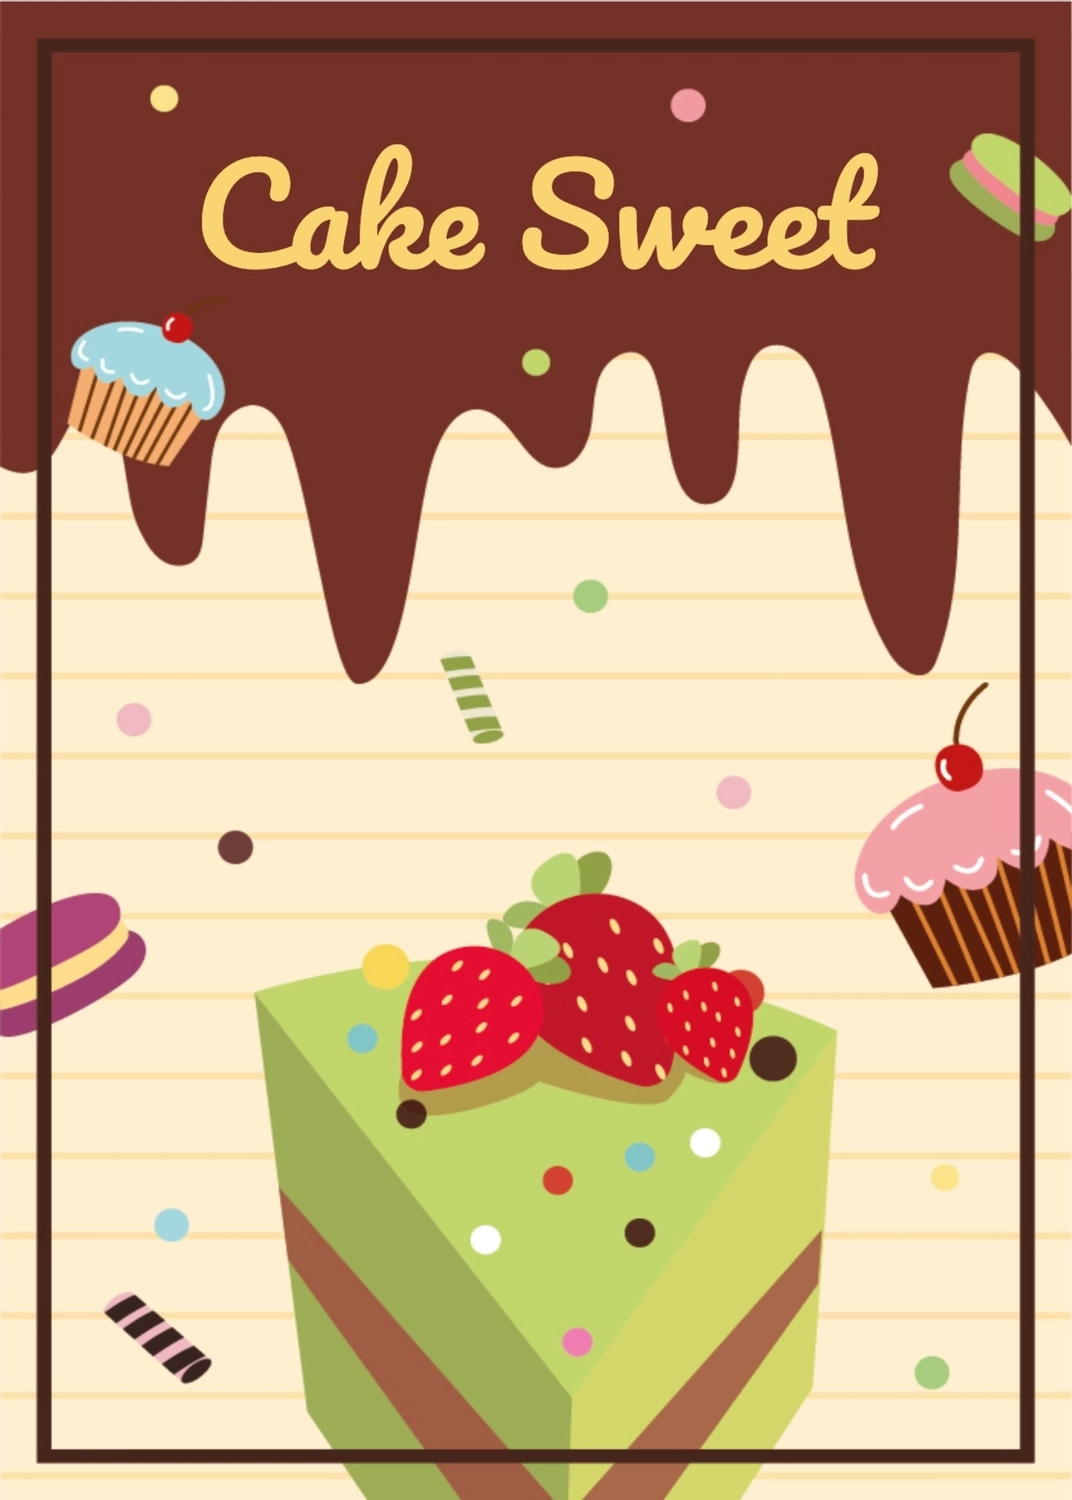 ケーキのグリーティングカード　いちごののったカットケーキ, ケーキスウィート, 作成, デザイン, メッセージカードテンプレート